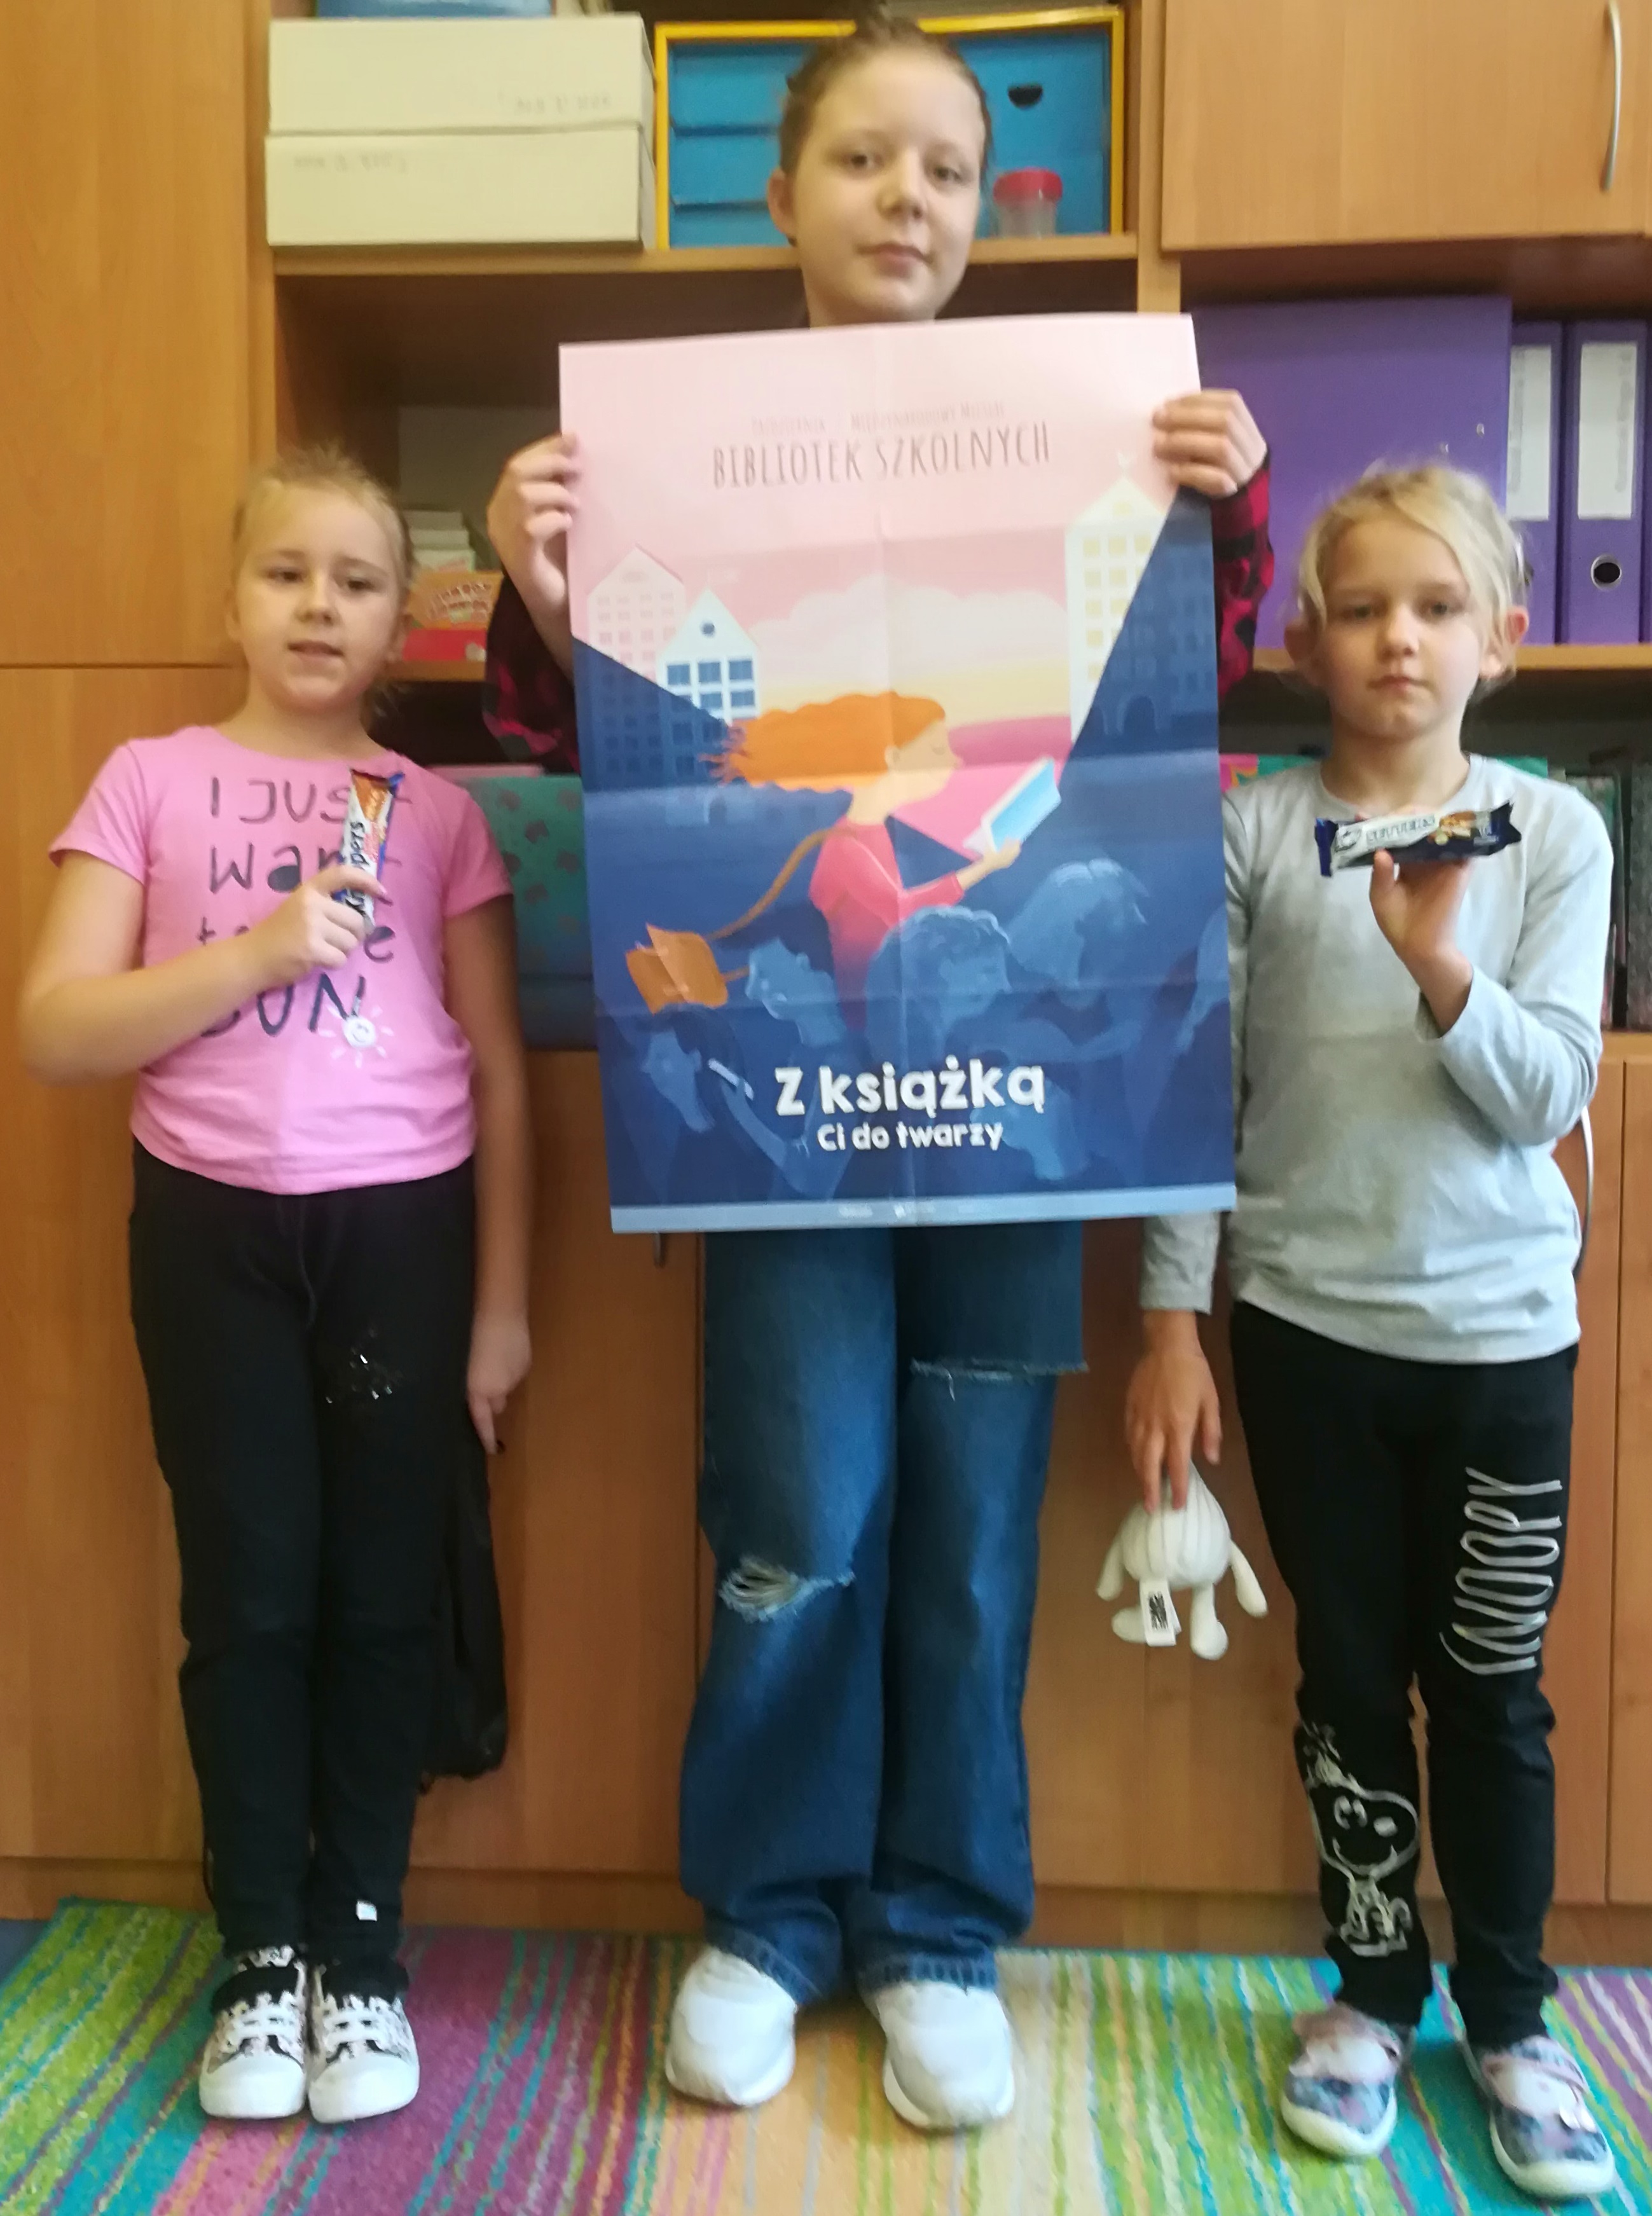 Trzy uczennice, jedna z nich trzyma w rękach plakat zatytułowany "Październik 2022 miesiącem bibliotek szkolnych".